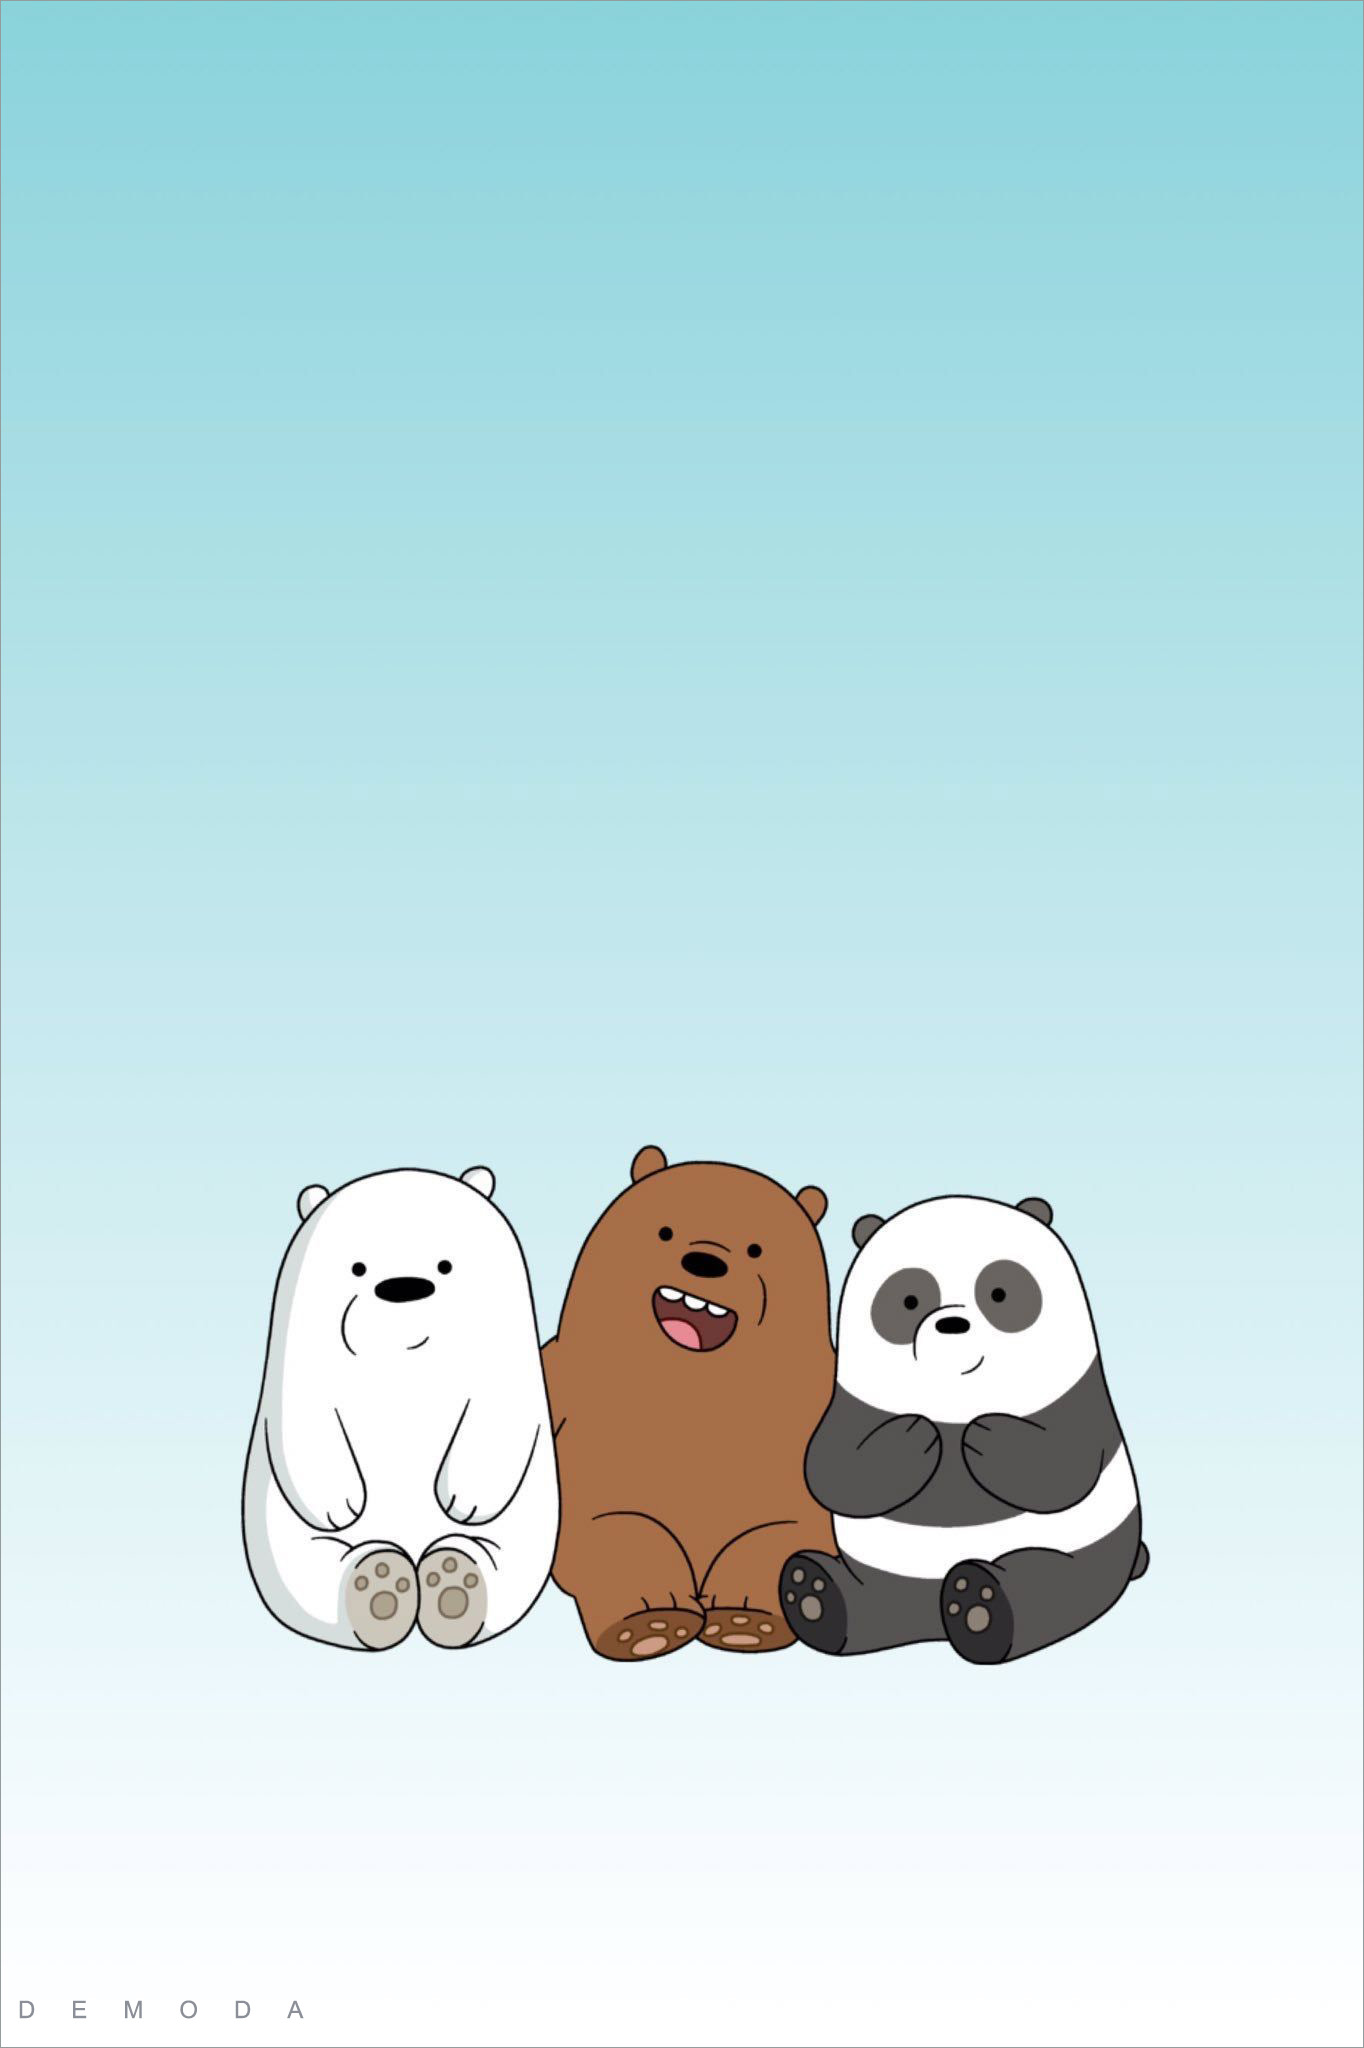 We Bare Bear là một bộ phim hoạt hình phổ biến dành cho các bạn trẻ. Bộ sưu tập hình nền We Bare Bear sẽ đem lại một trải nghiệm thú vị và giúp bạn hiểu rõ hơn về câu chuyện khác biệt của các chú gấu trúc trong thế giới người.